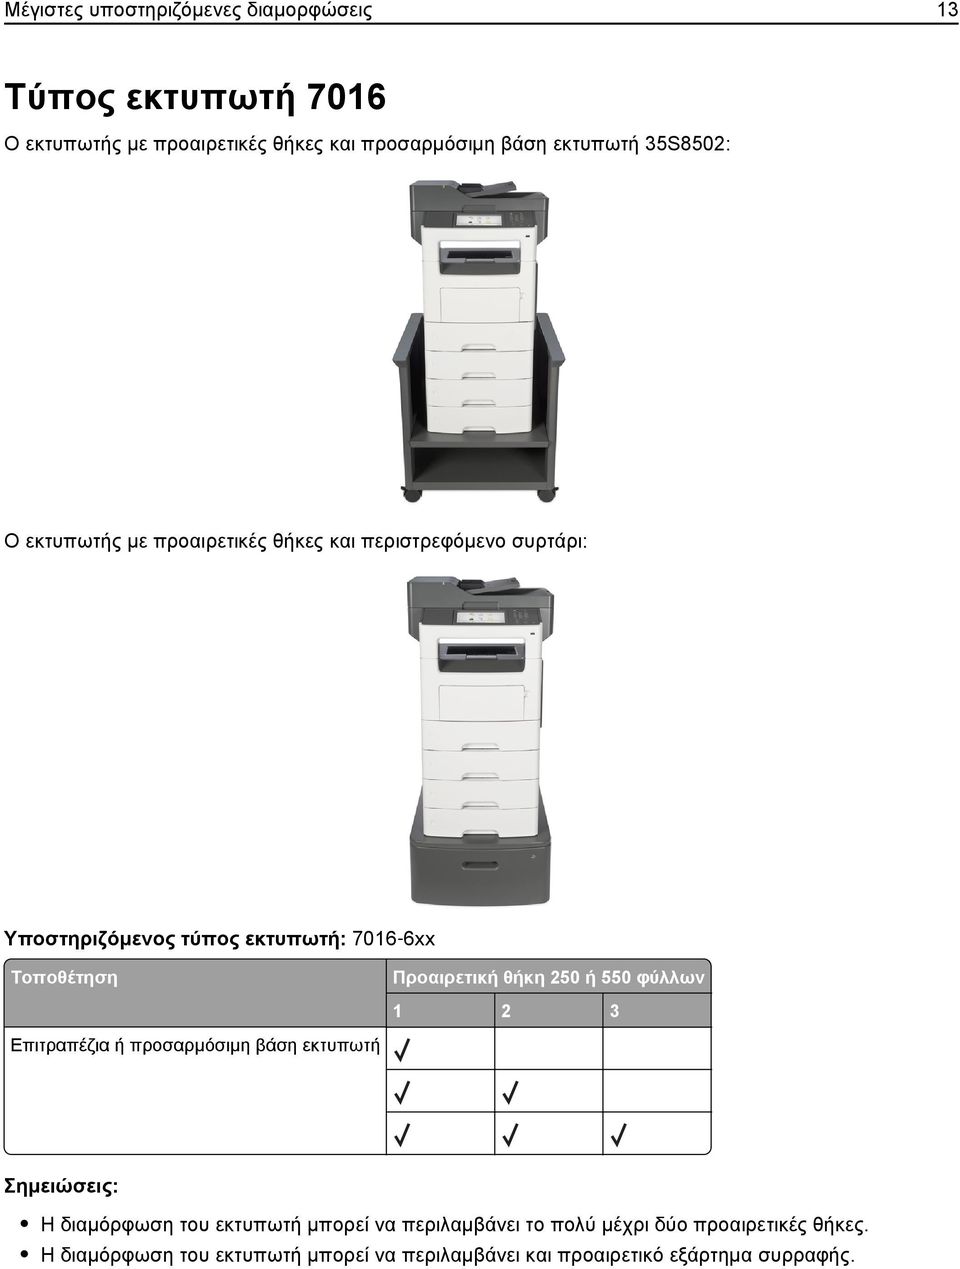 Τοποθέτηση Επιτραπέζια ή προσαρμόσιμη βάση εκτυπωτή θήκη 250 ή 550 φύλλων 1 2 3 Σημειώσεις: Η διαμόρφωση του εκτυπωτή μπορεί